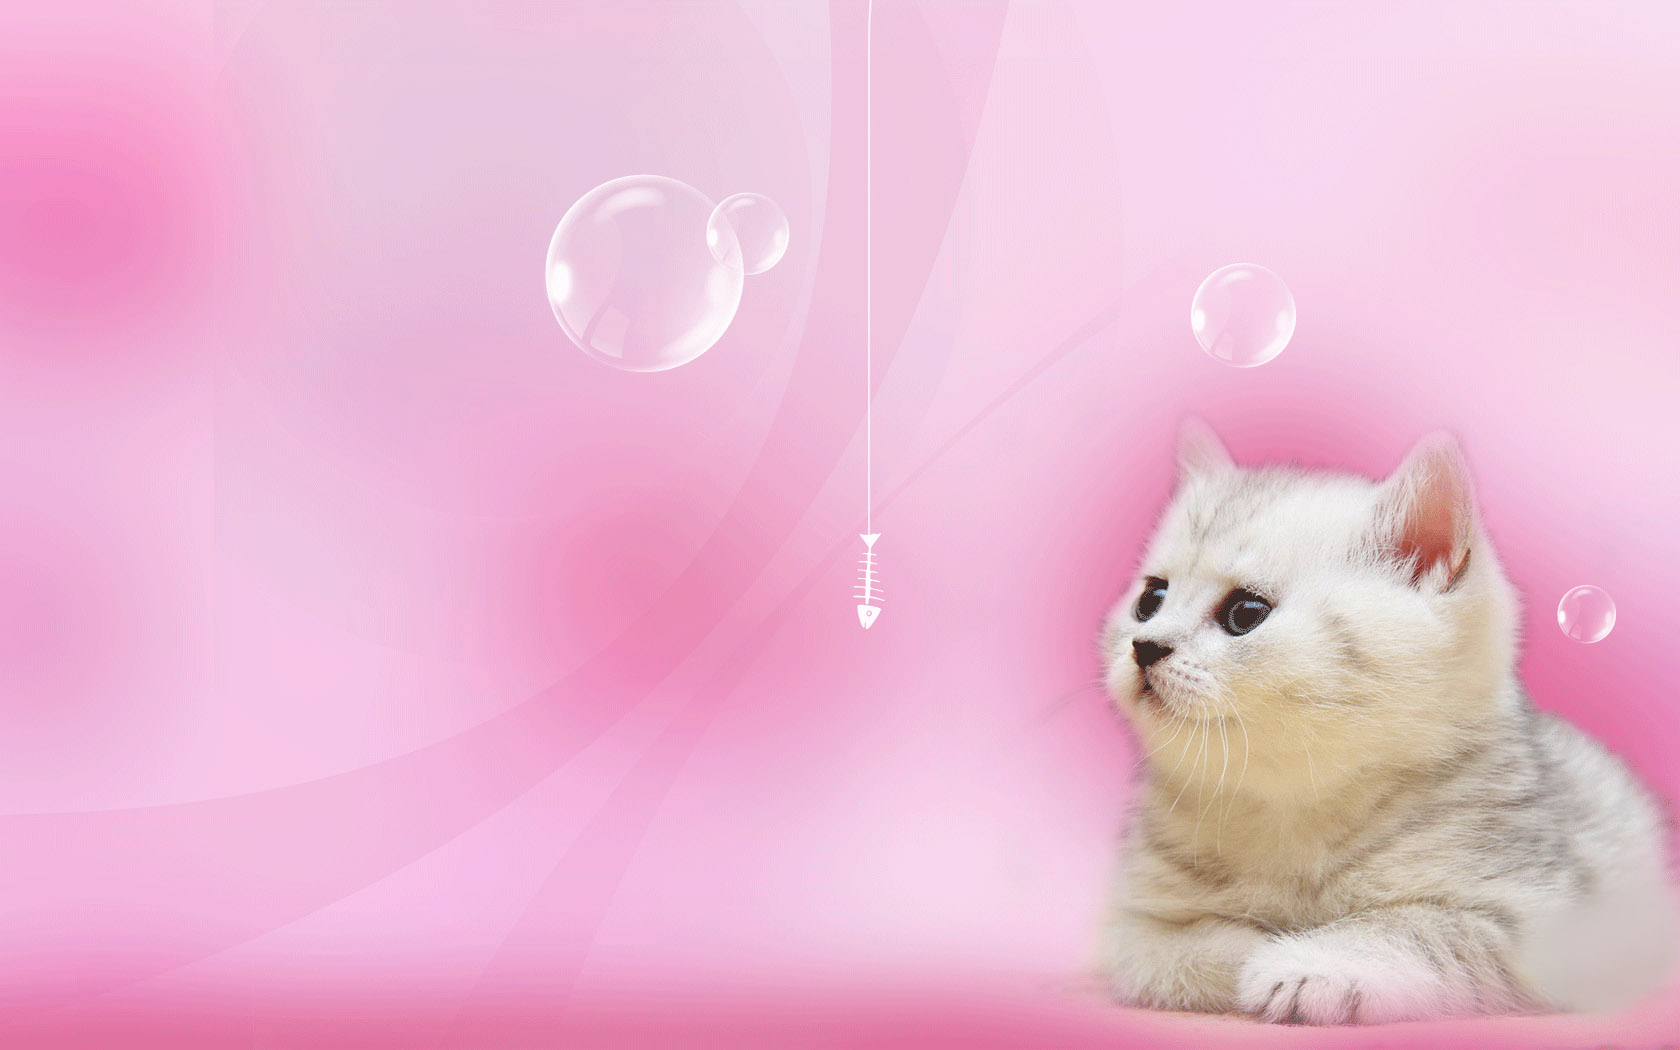 Cute kitten picture wallpaper